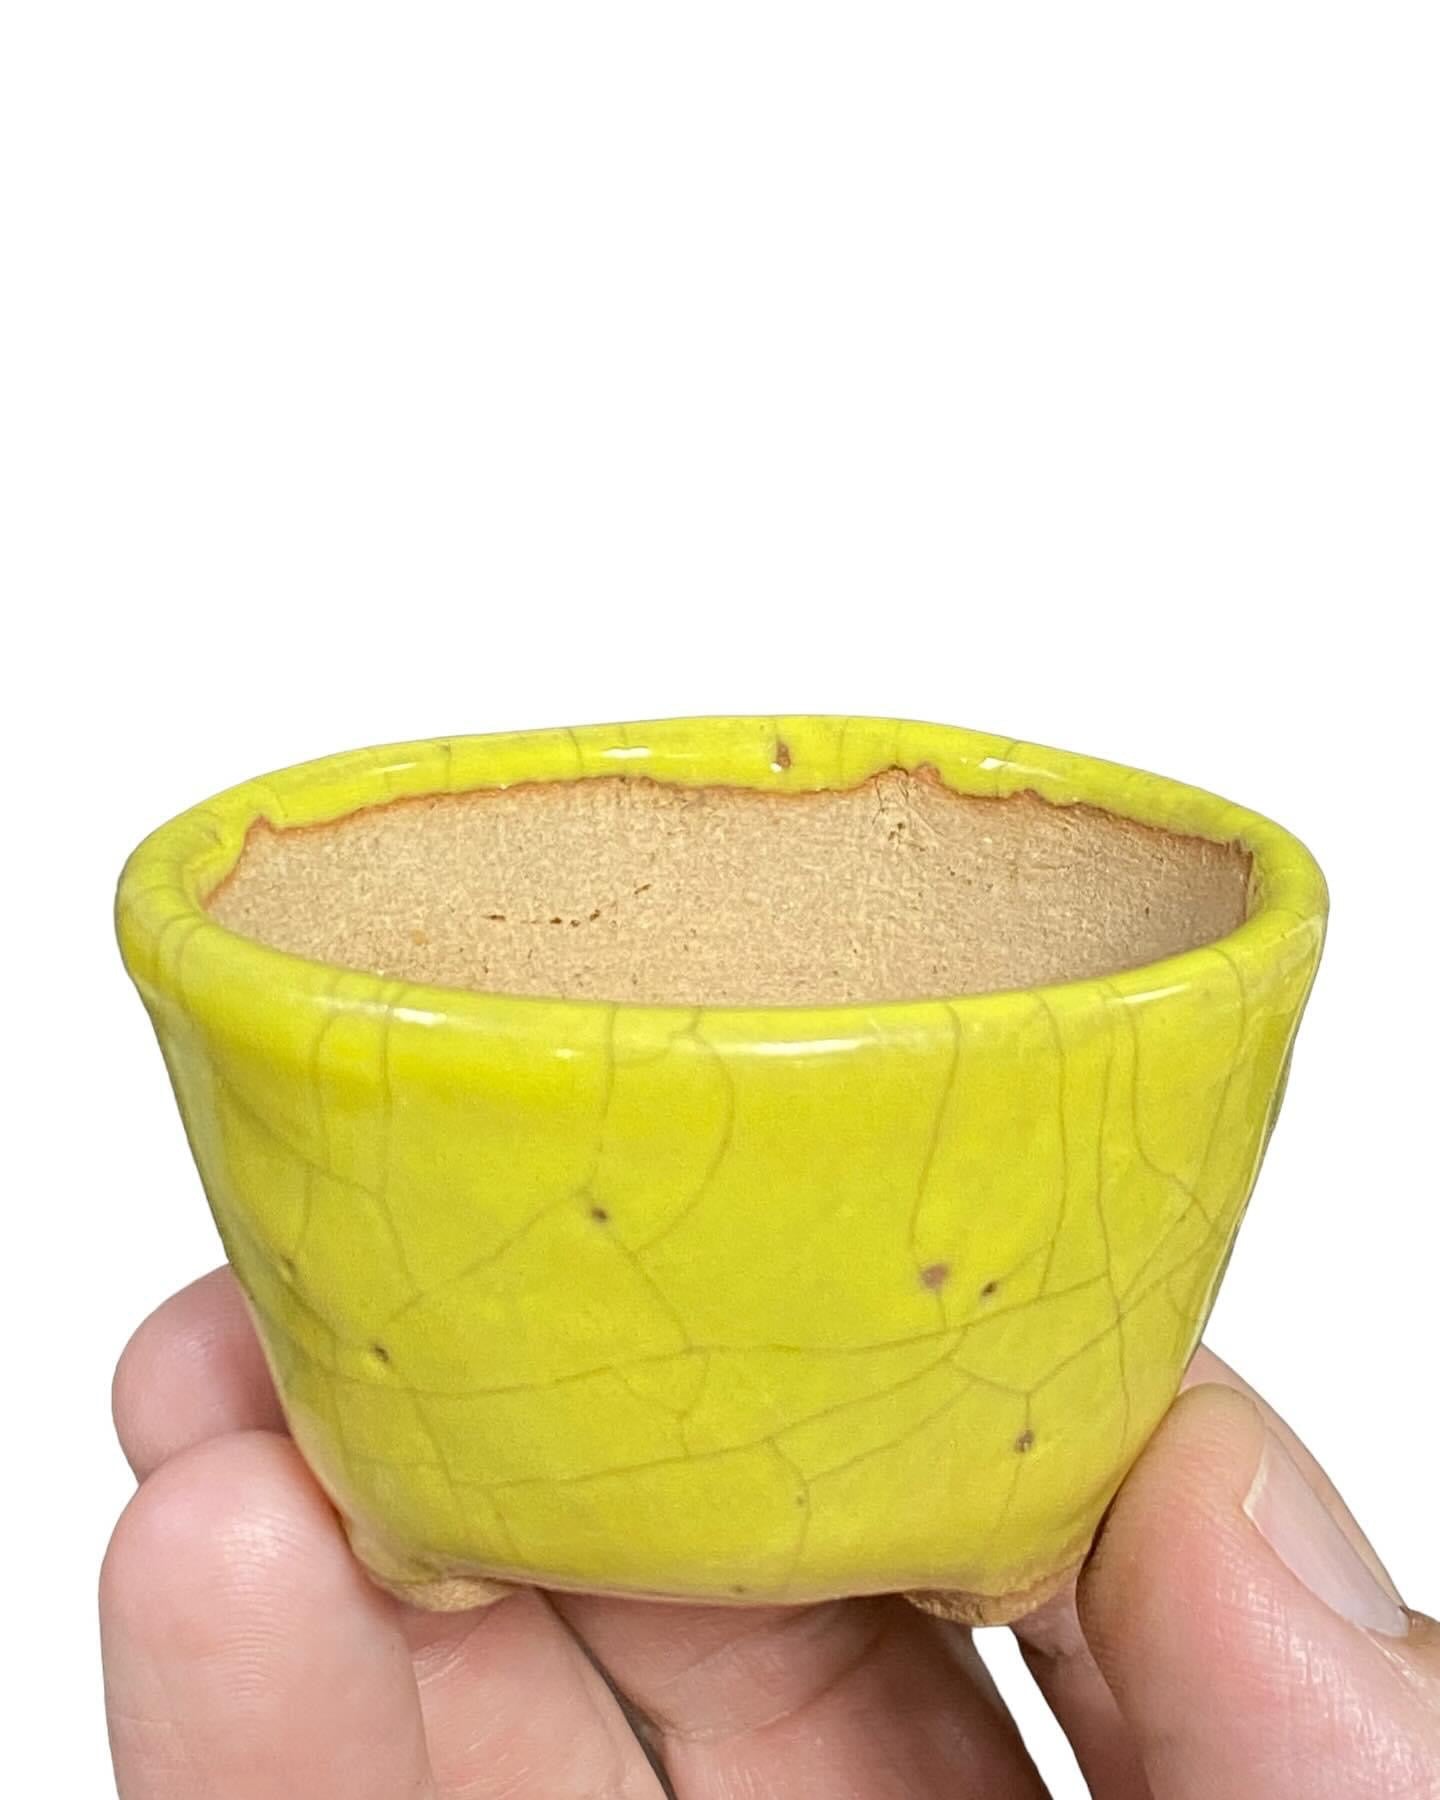 Mituyama - Yellow Crackle Glazed Bonsai Pot (2-1/2” wide)